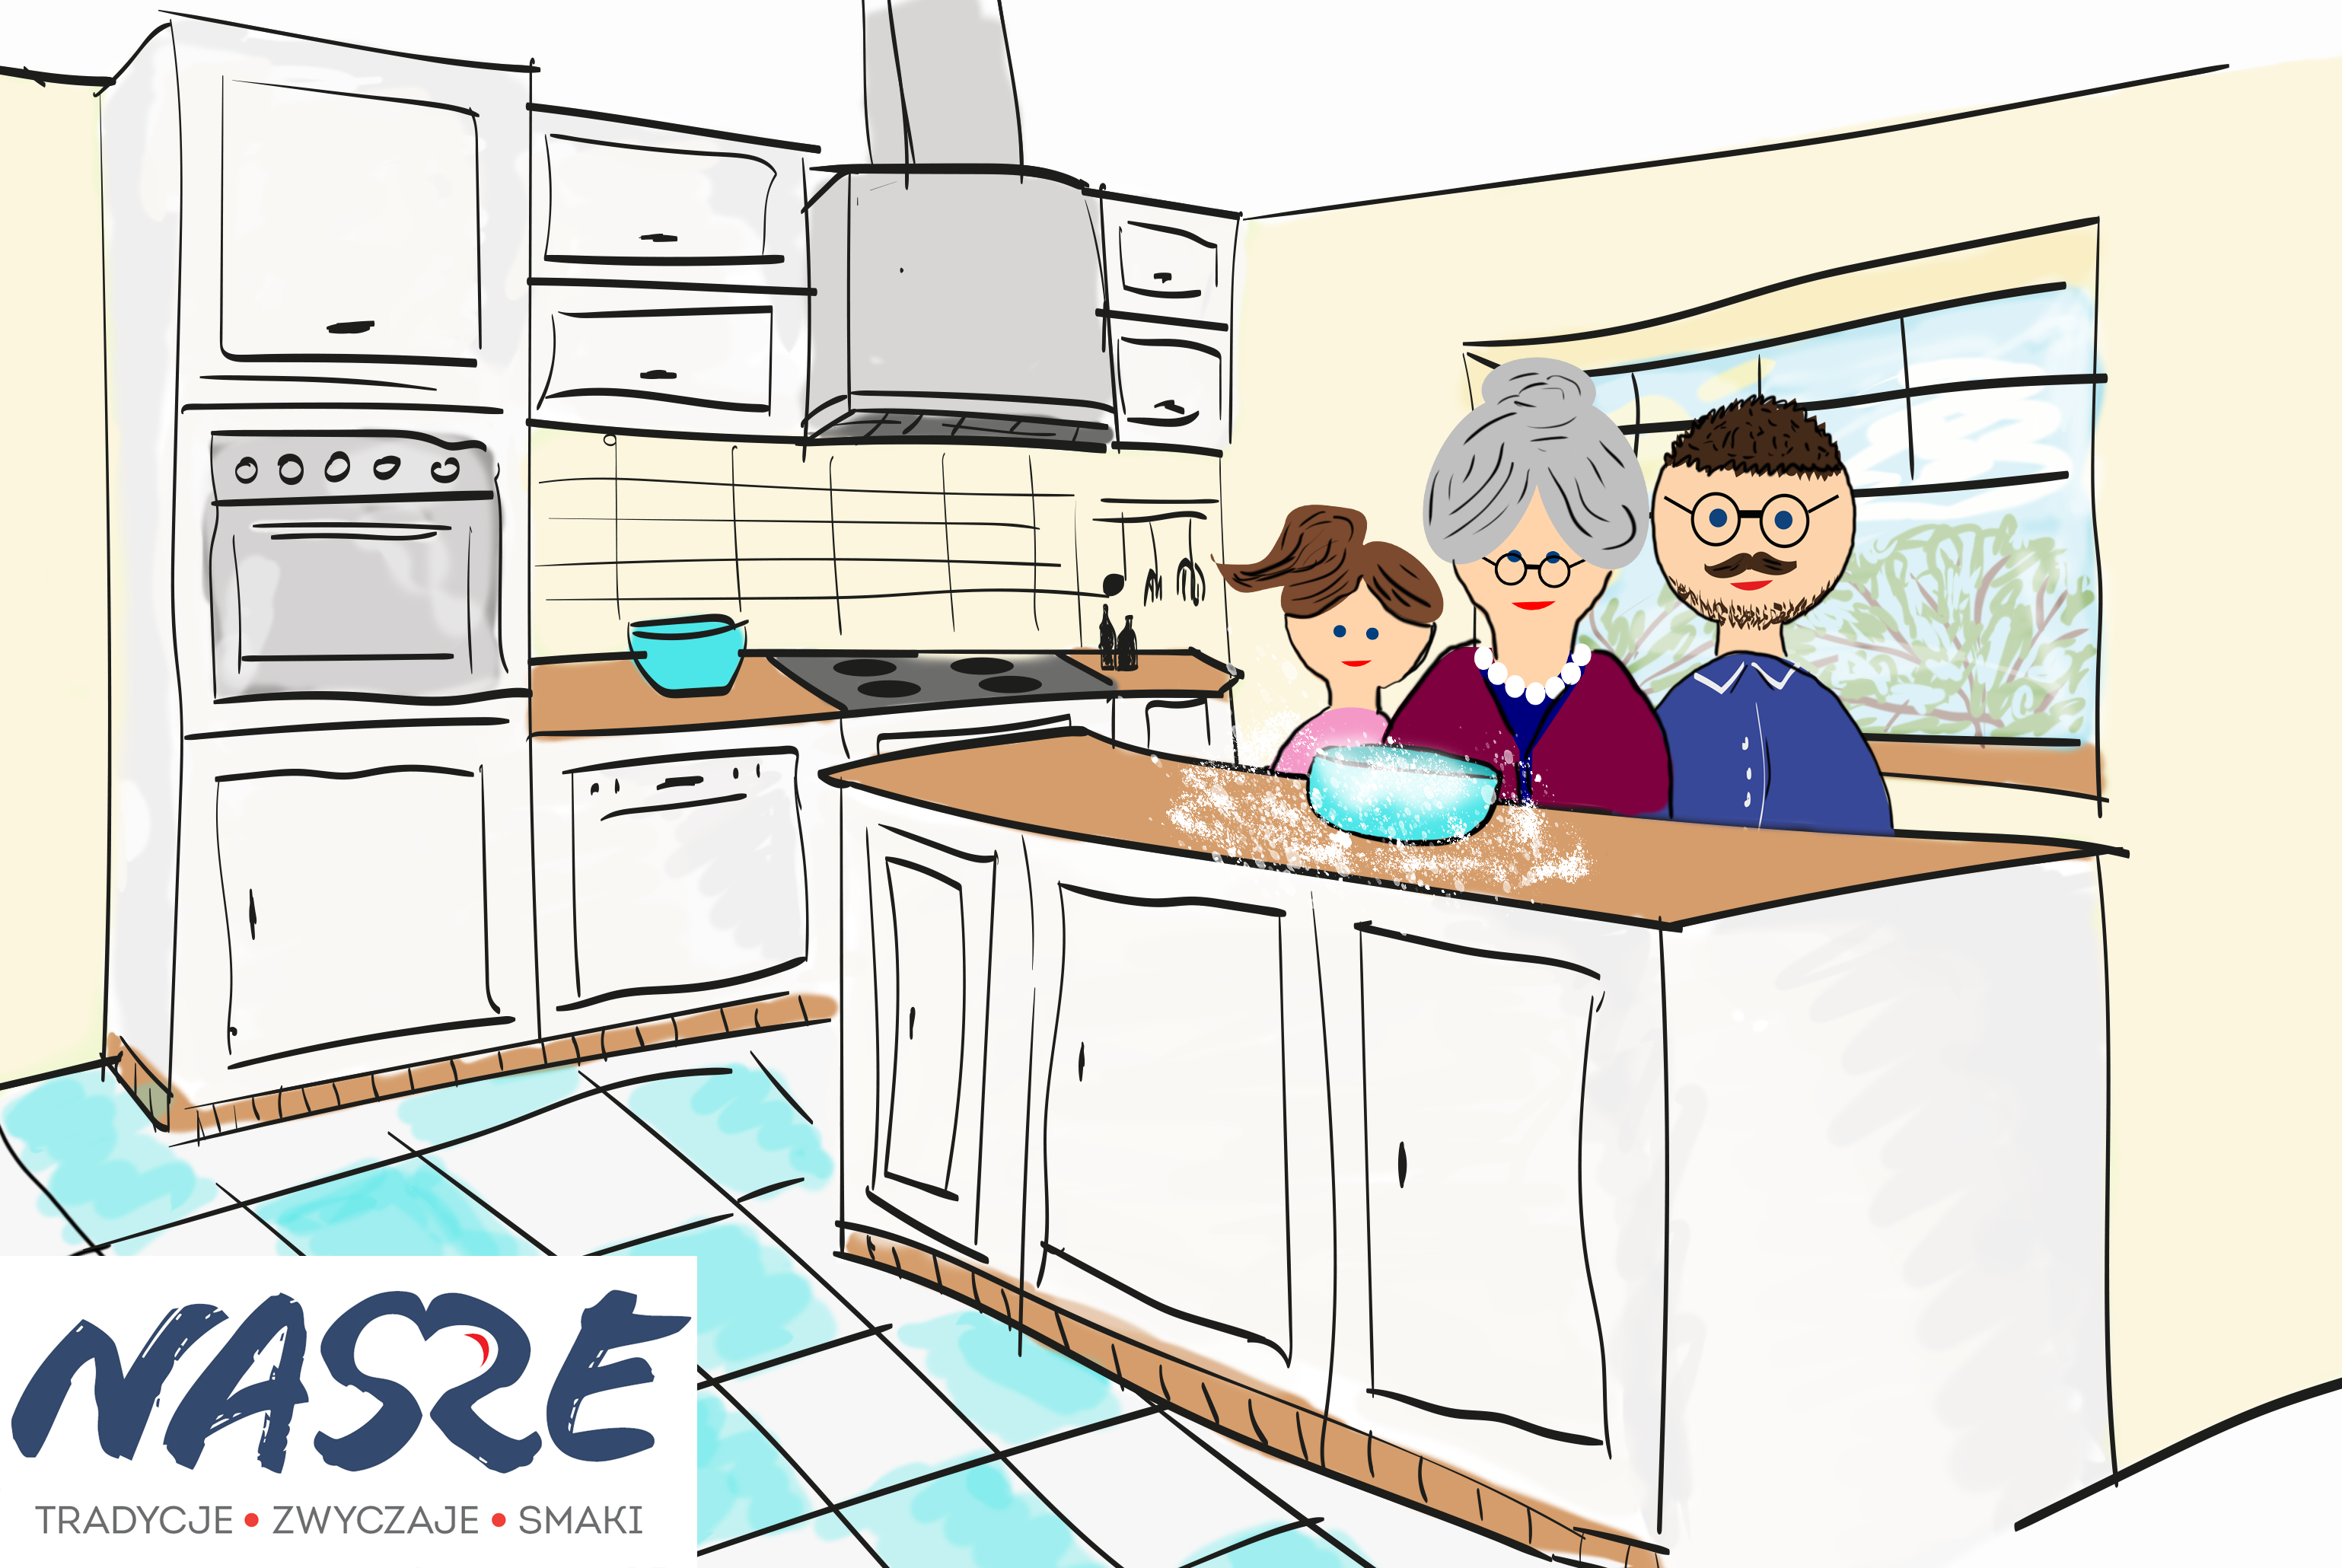 grafika ukazująca wielopokoleniową rodzinę gotującą w kuchni